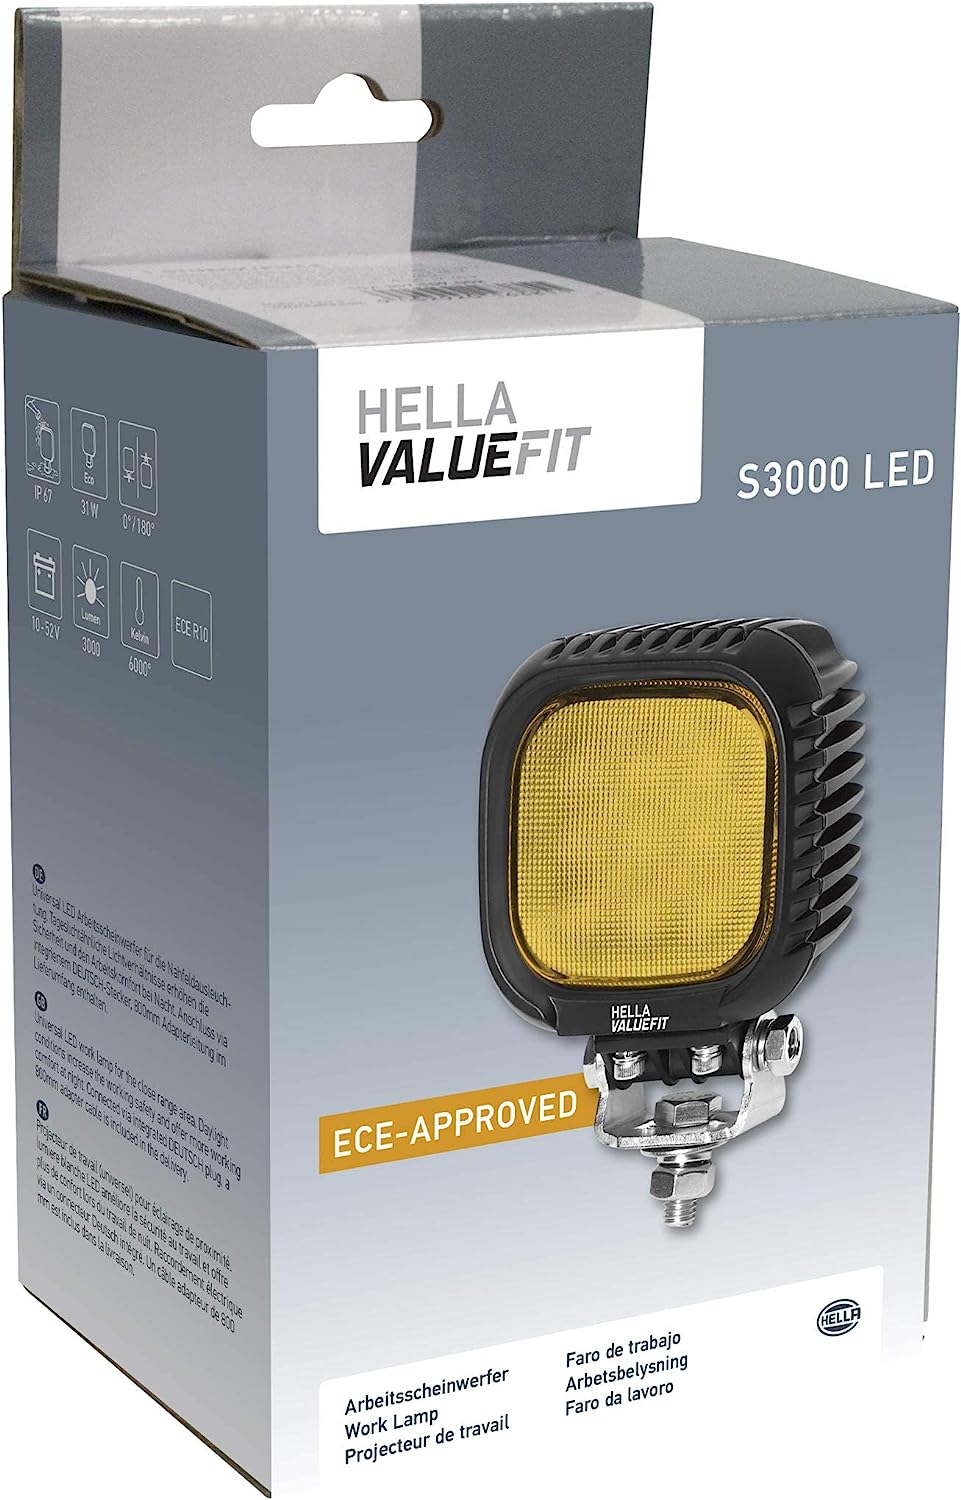 2 x Arbeitsscheinwerfer HELLA ValueFit S1500 LED